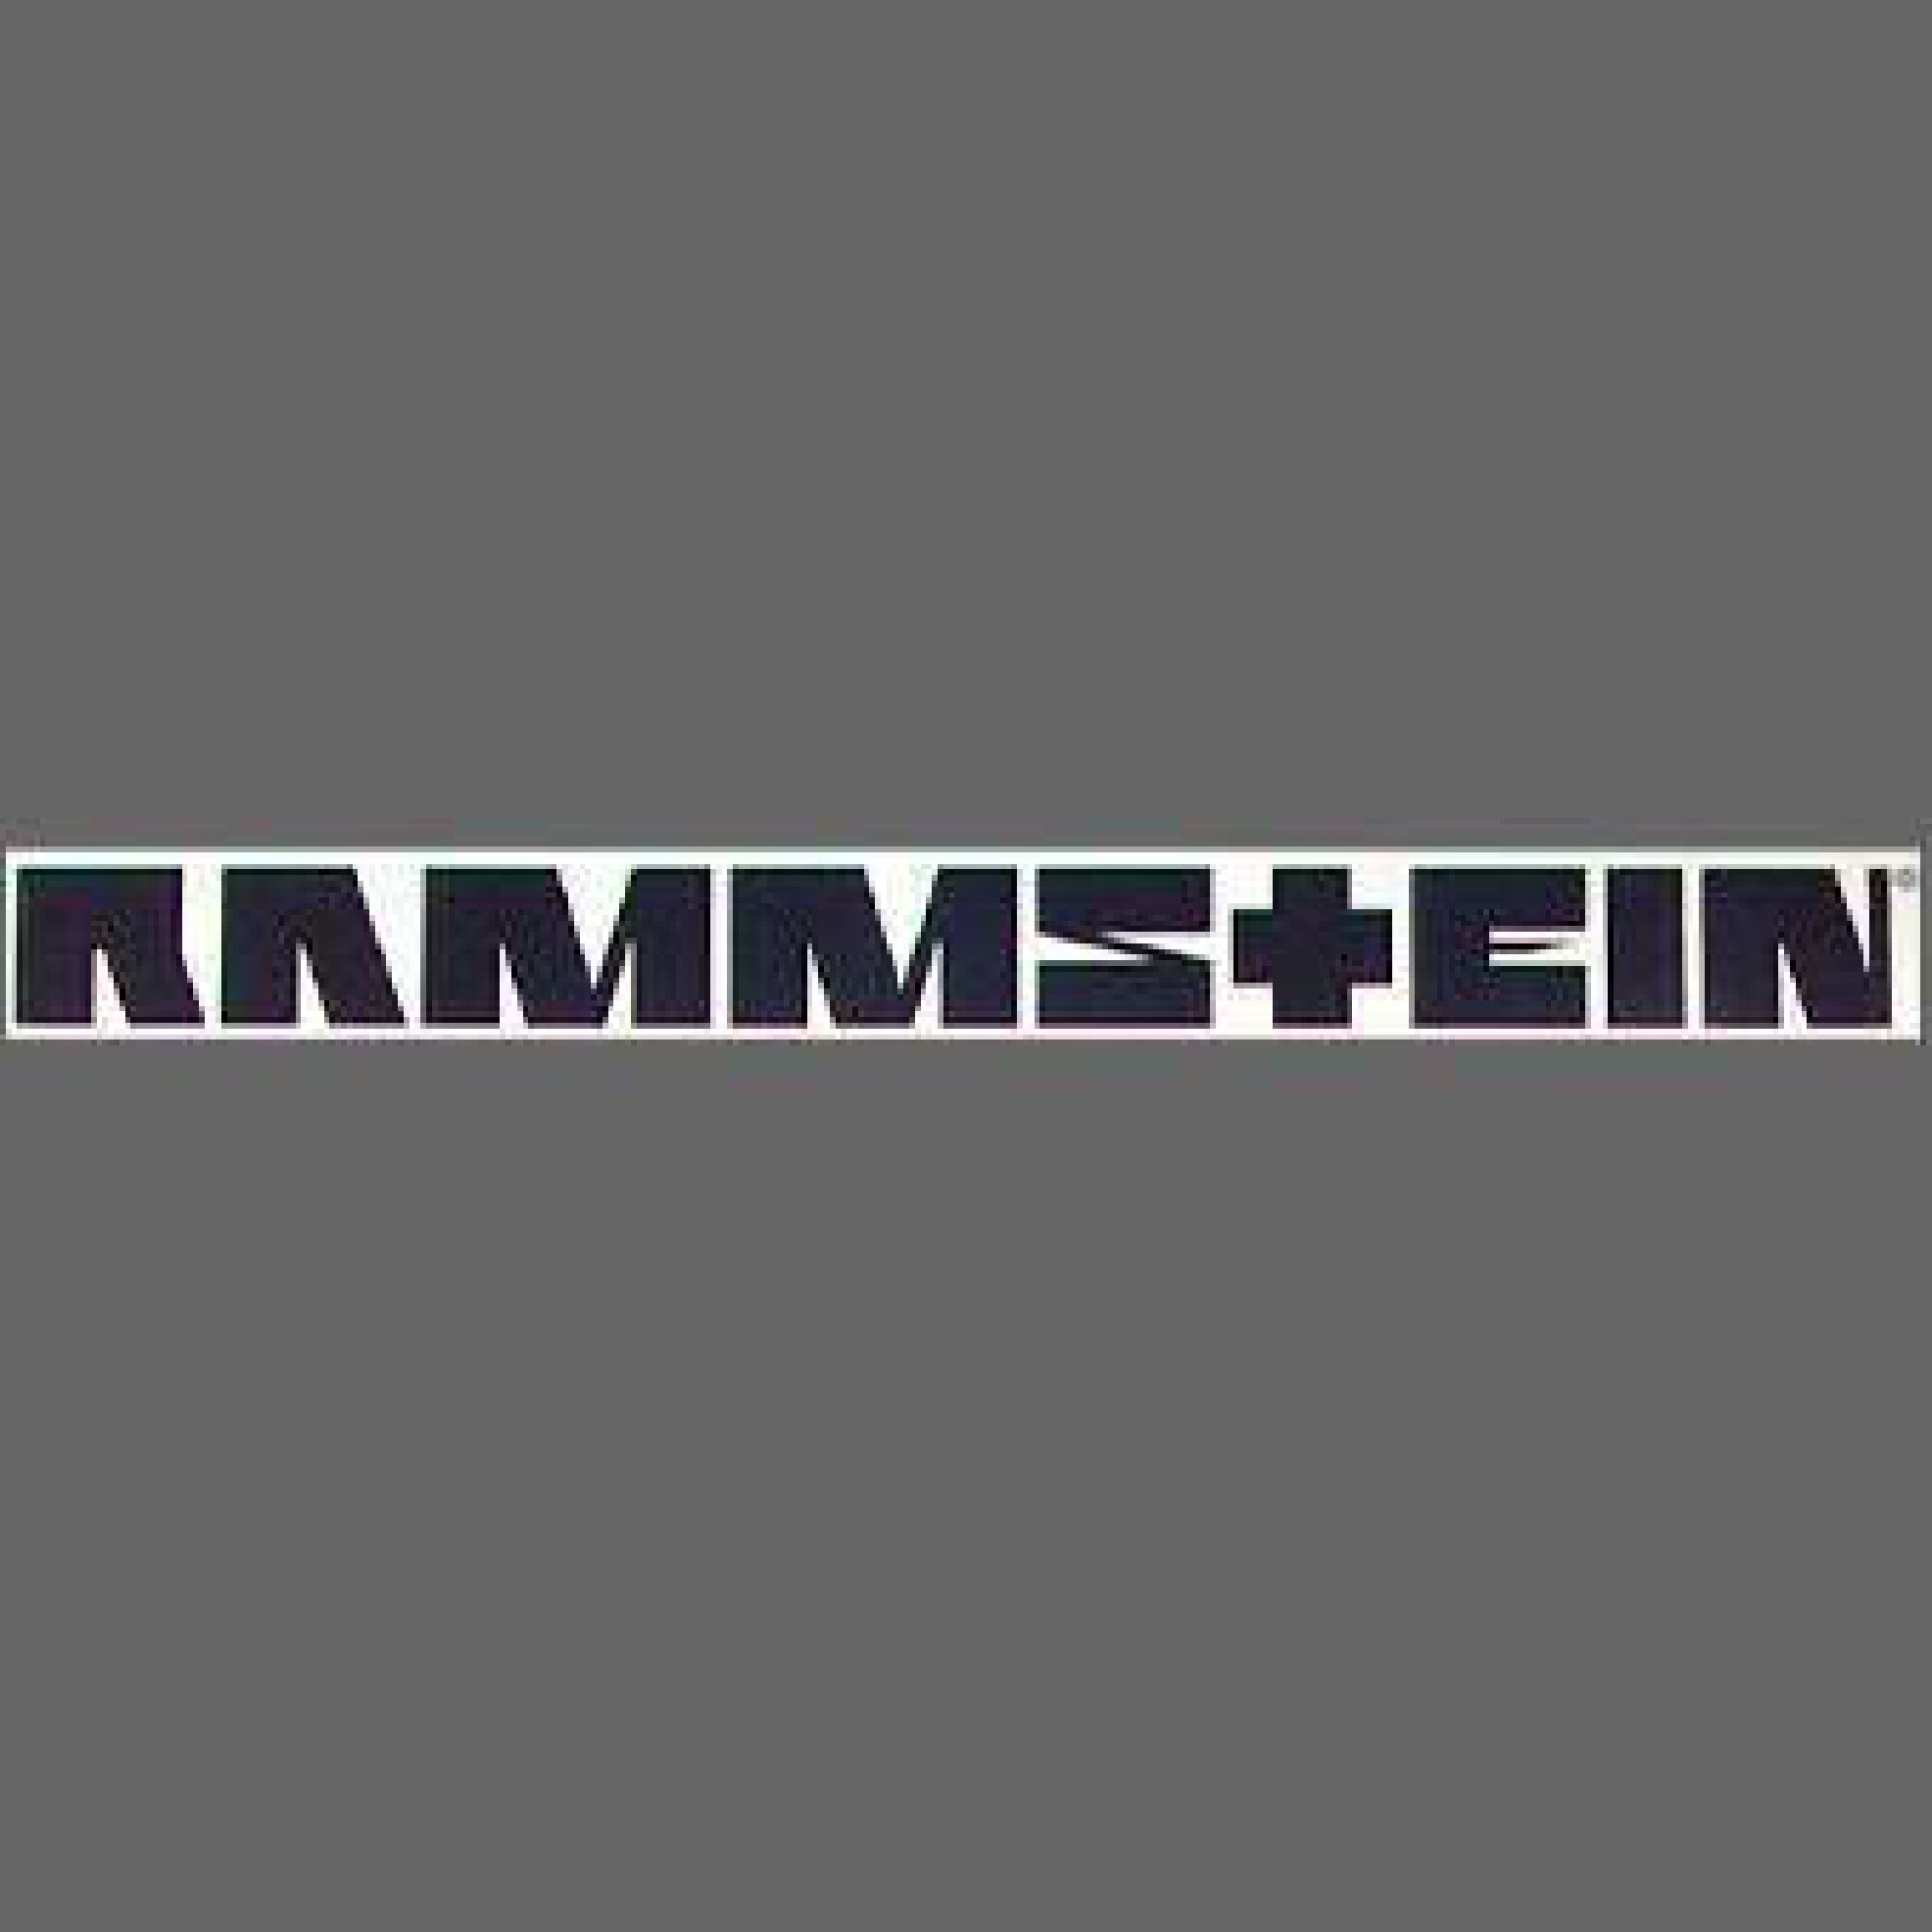 Rammstein Auto Aufkleber Sticker Tuning Styling Fun Bike Wunschfarbe (012)